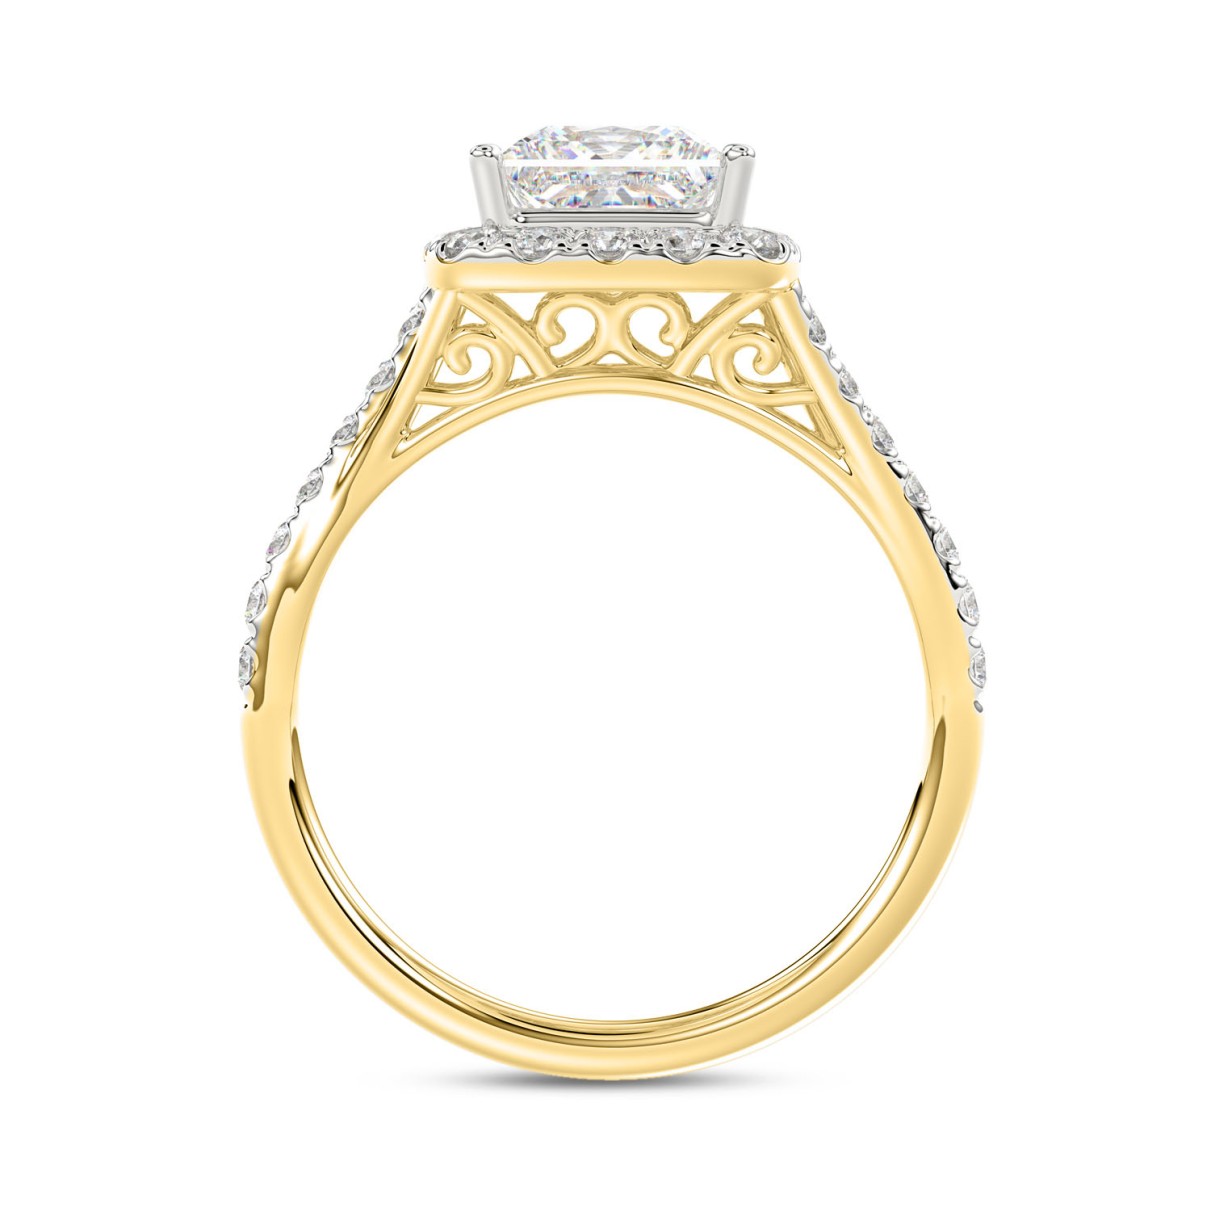 LADIES RING 2CT ROUND/PRINCESS DIAMOND 14K YELLOW GOLD (CENTER STONE PRINCESS DIAMOND 1 1/2CT )